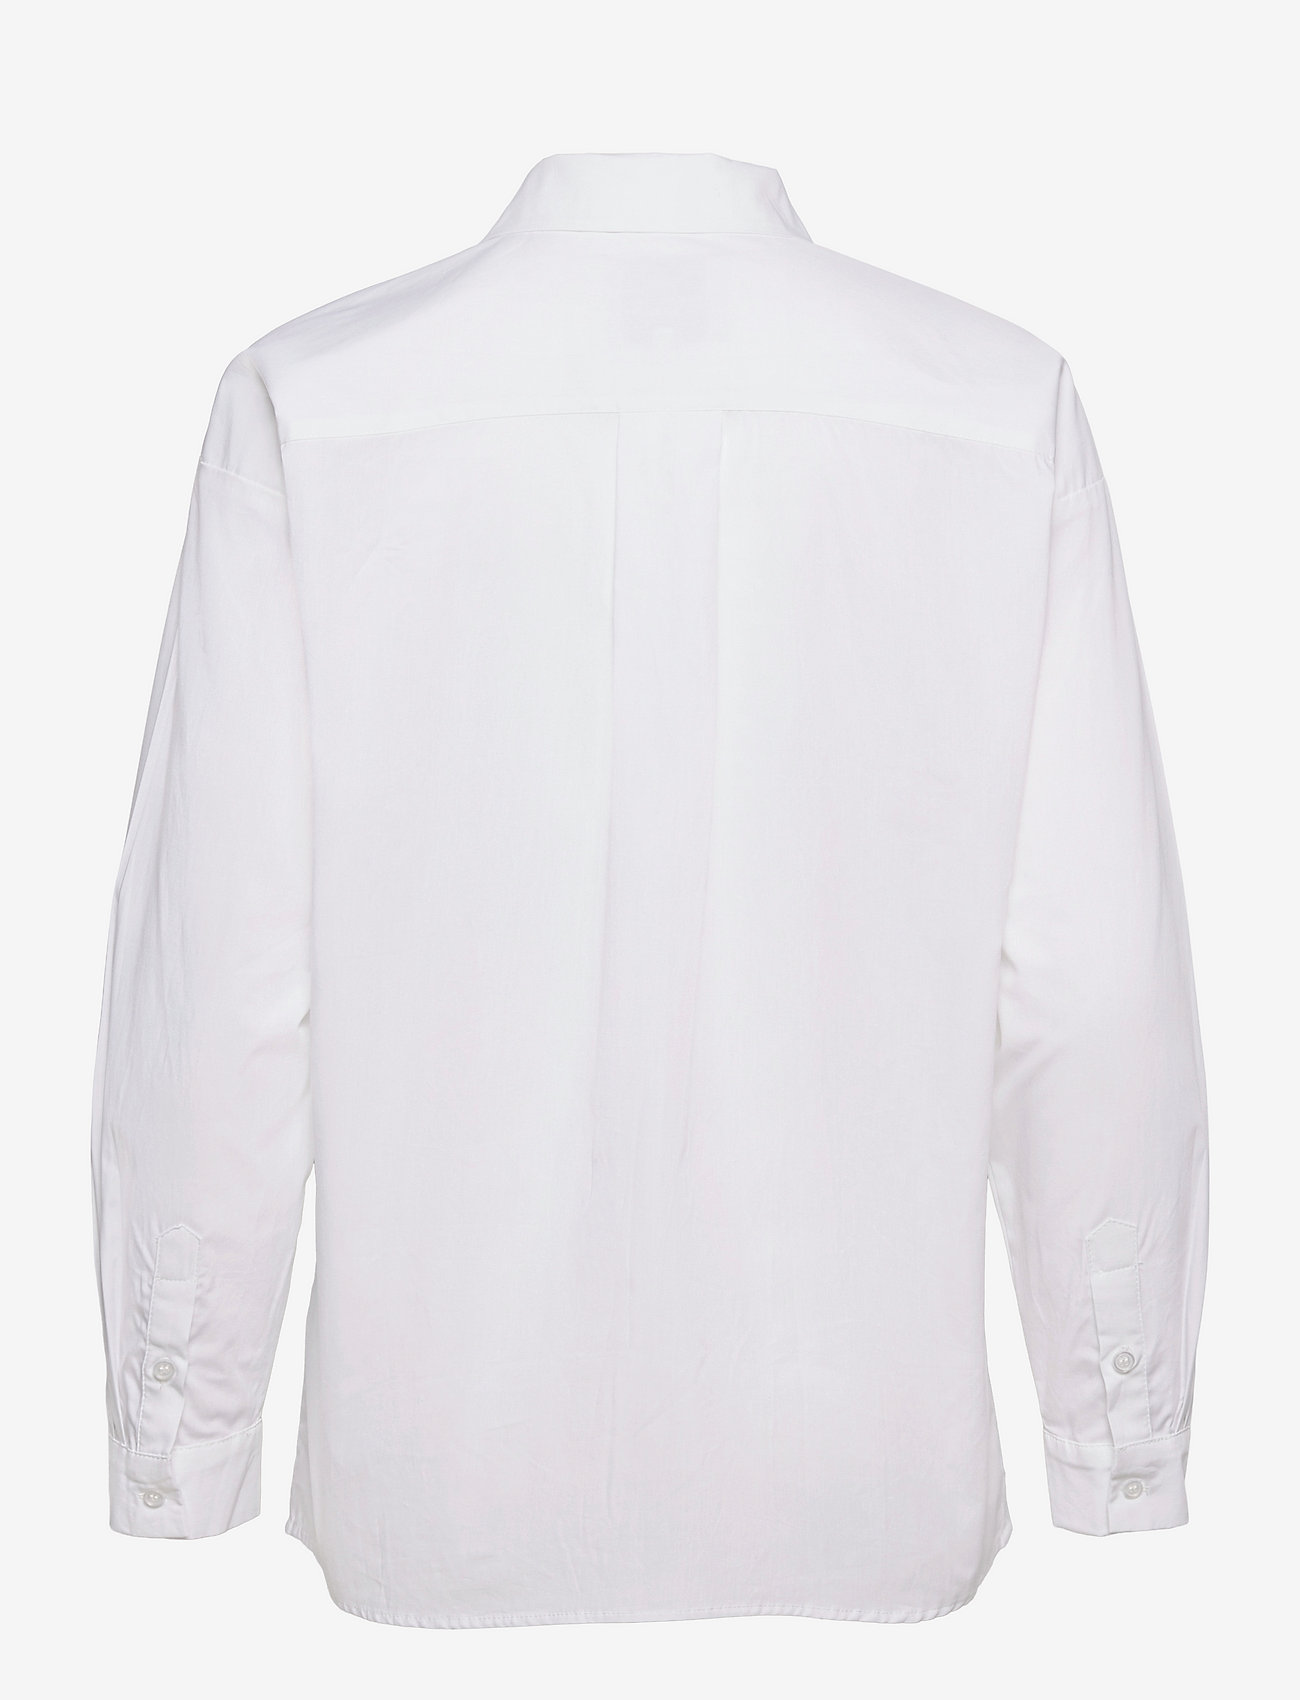 My Essential Wardrobe - 03 THE SHIRT - pitkähihaiset paidat - bright white - 1